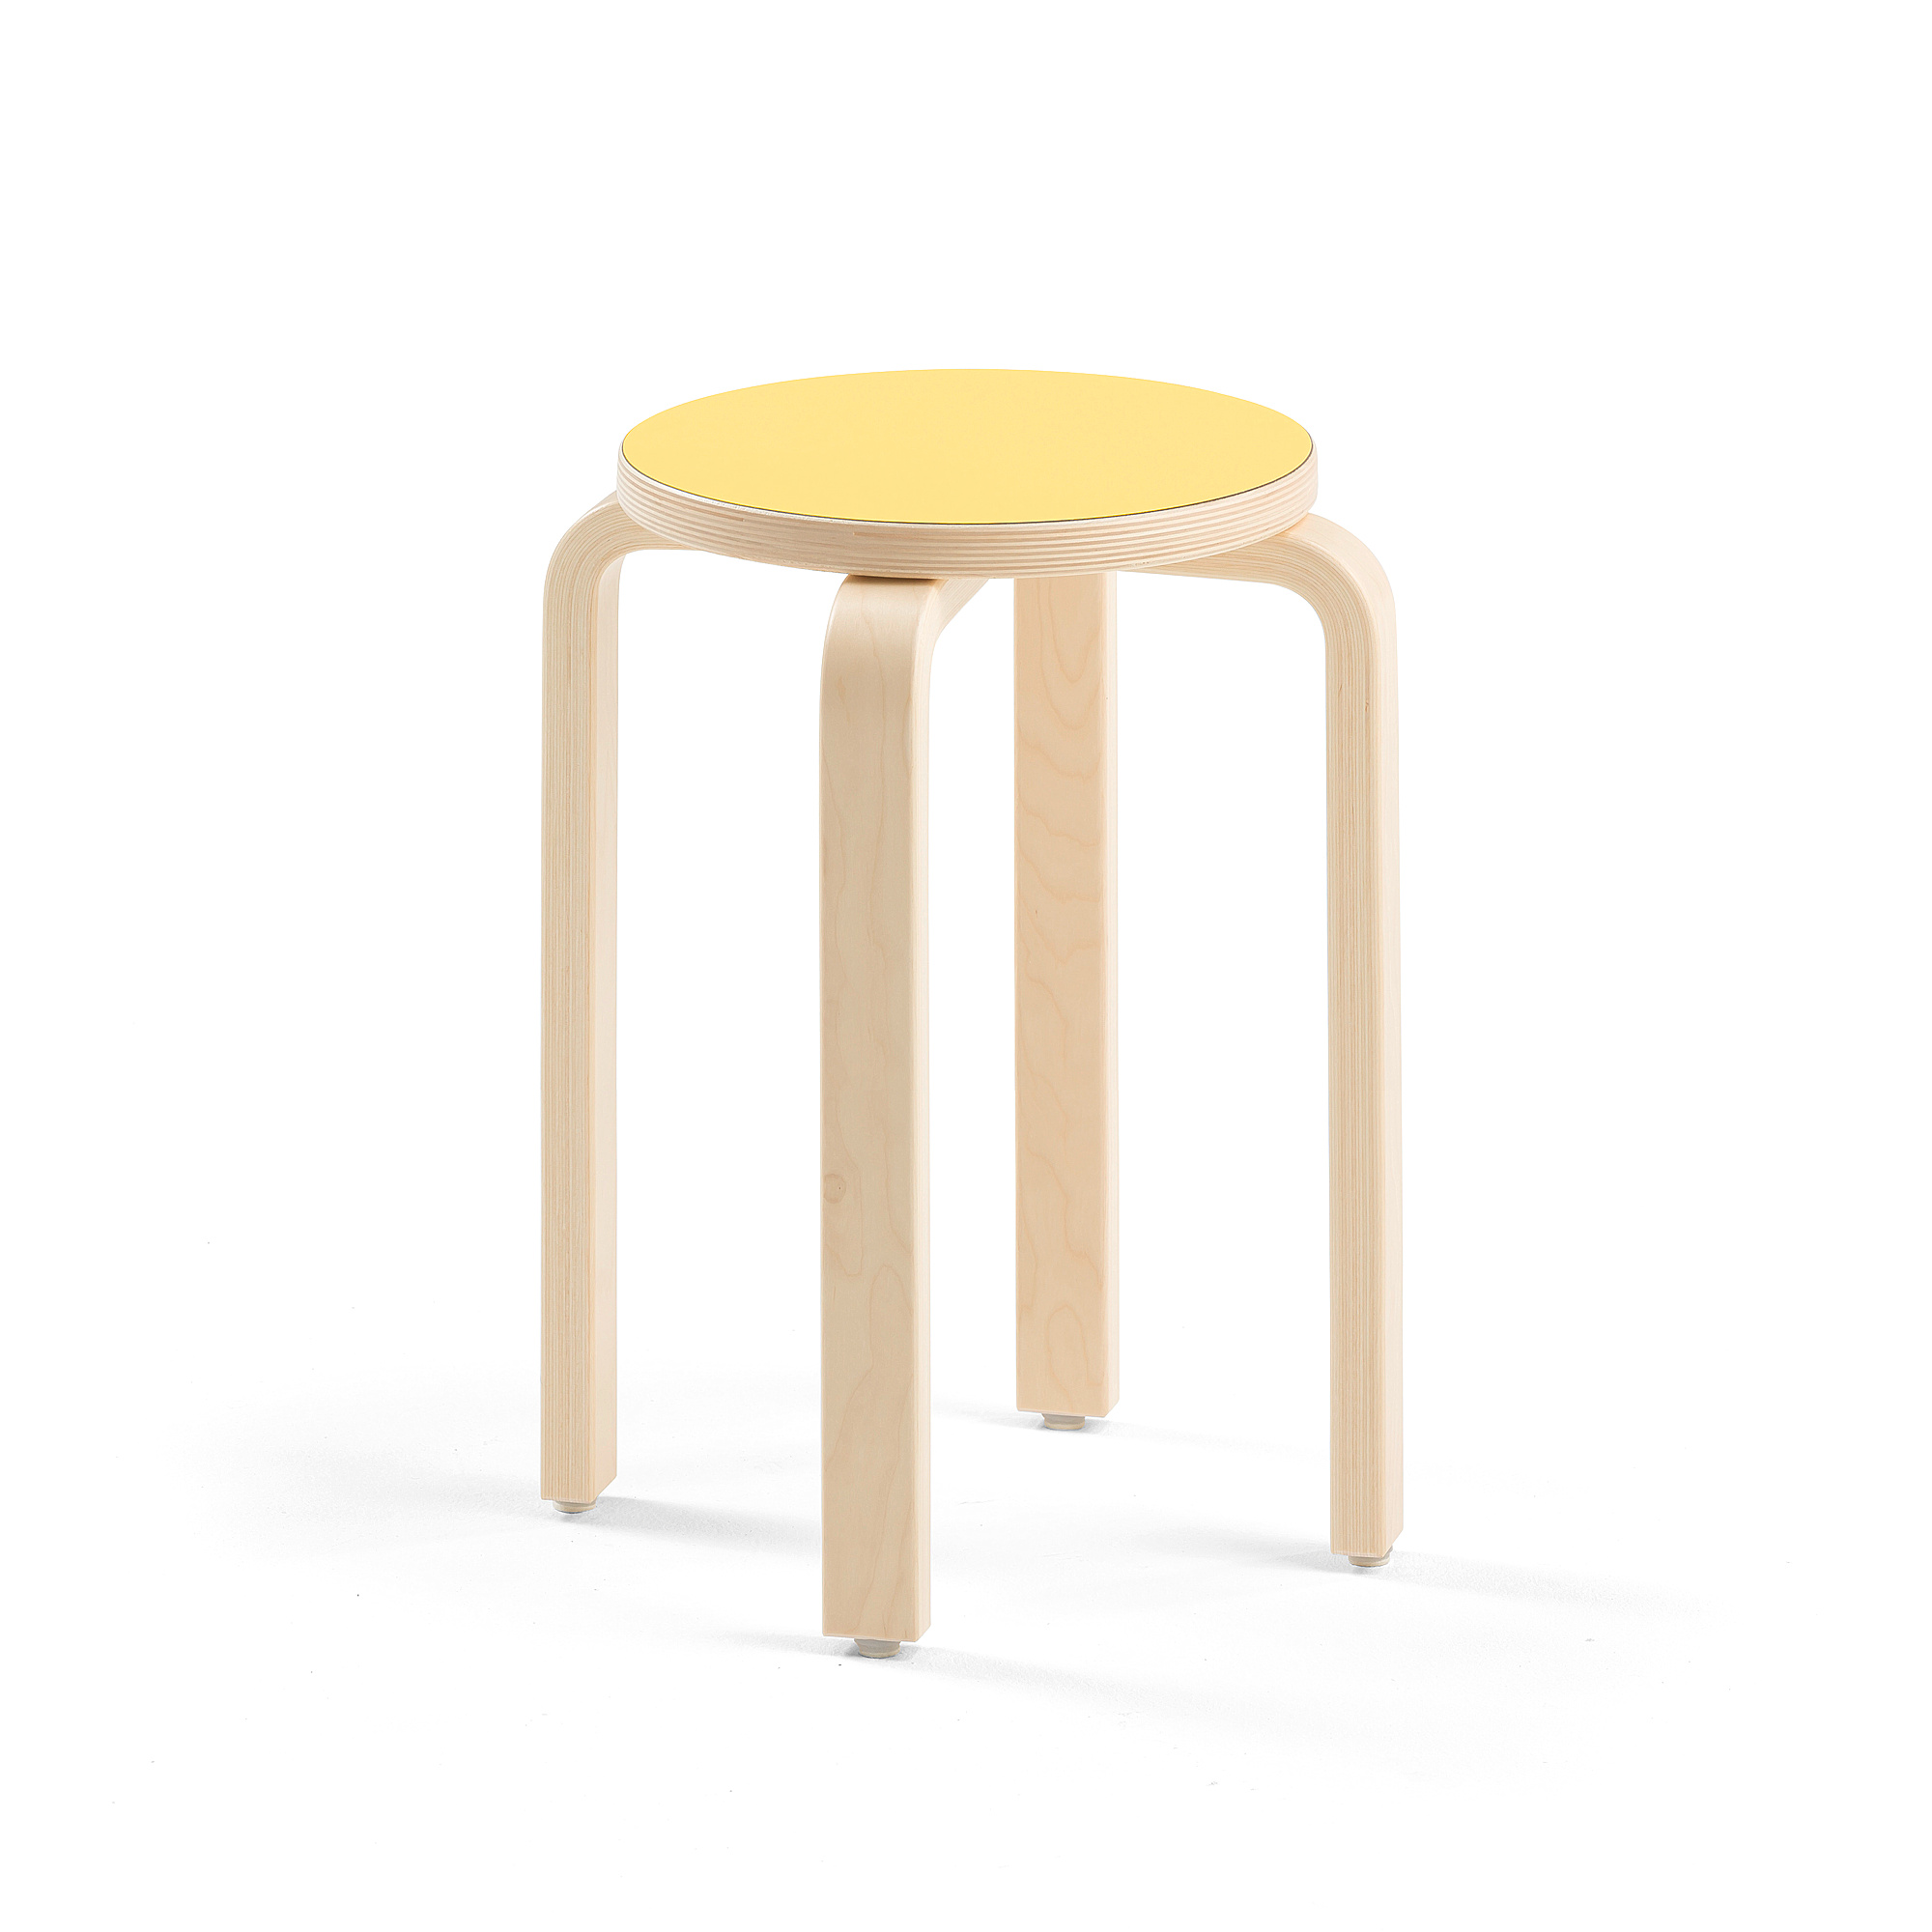 Dětská stolička DANTE, výška 460 mm, bříza/žlutá